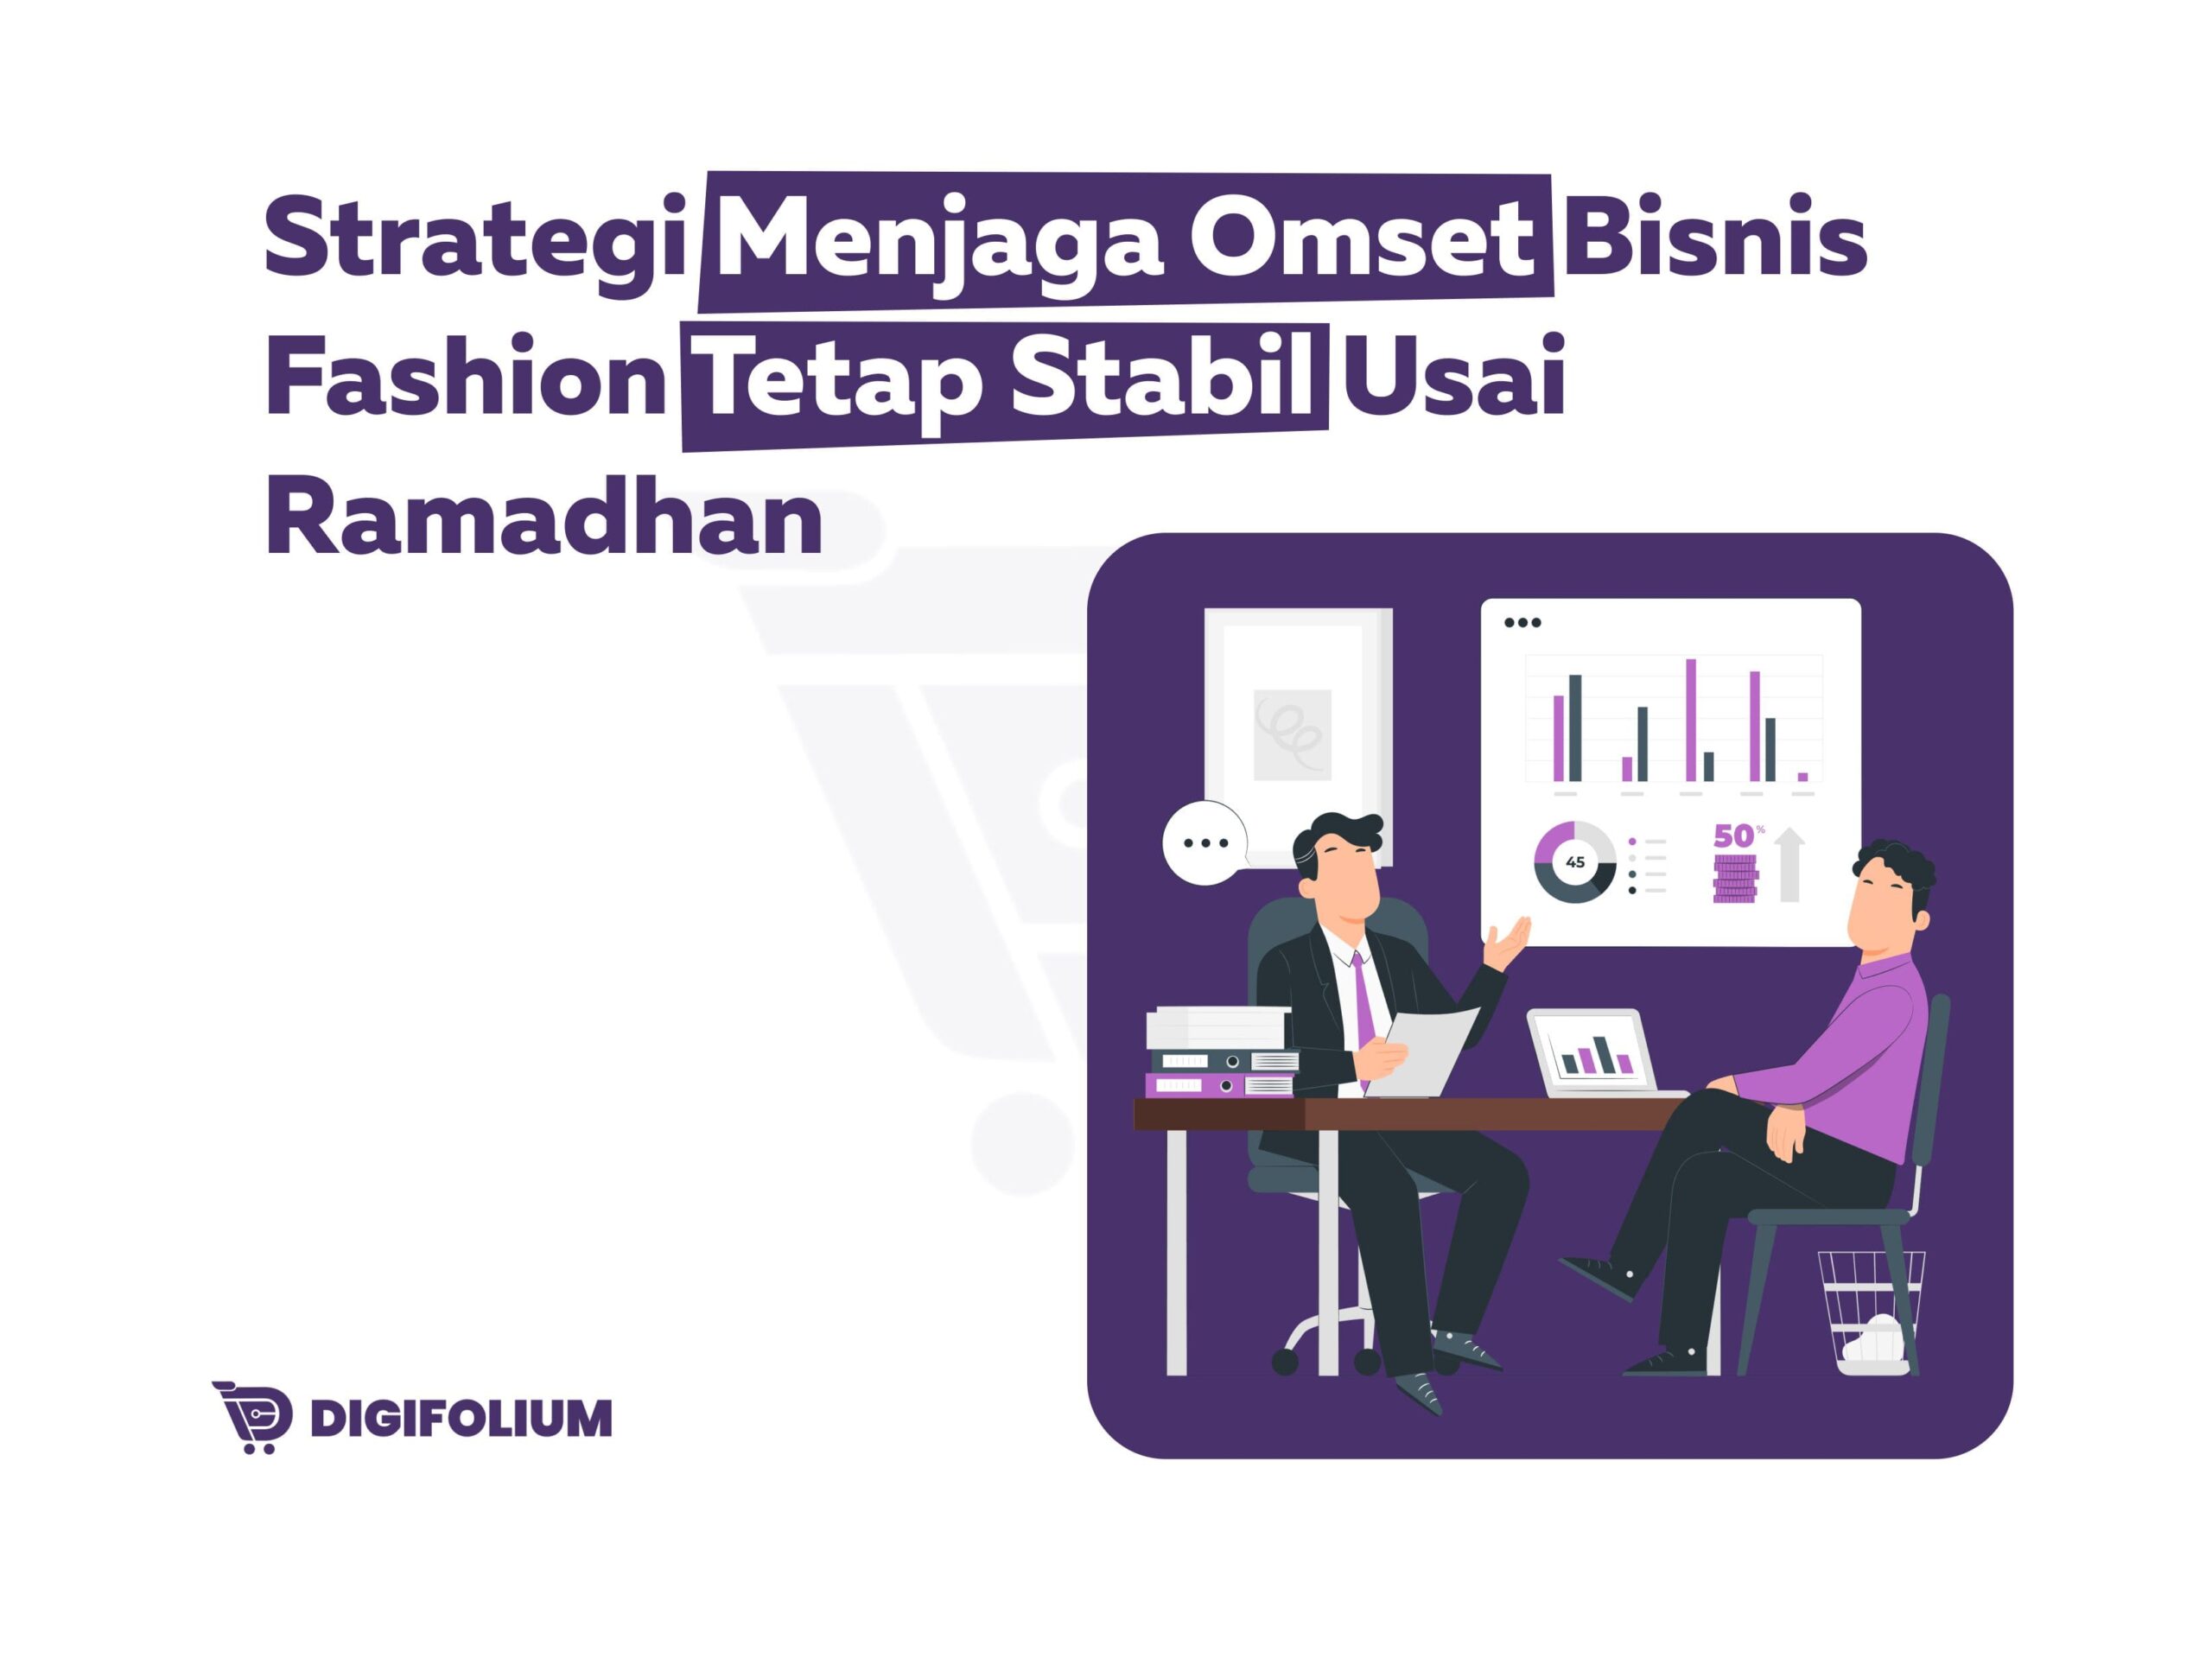 Strategi Menjaga Omset Bisnis fashion tetap stabil usai ramadhan